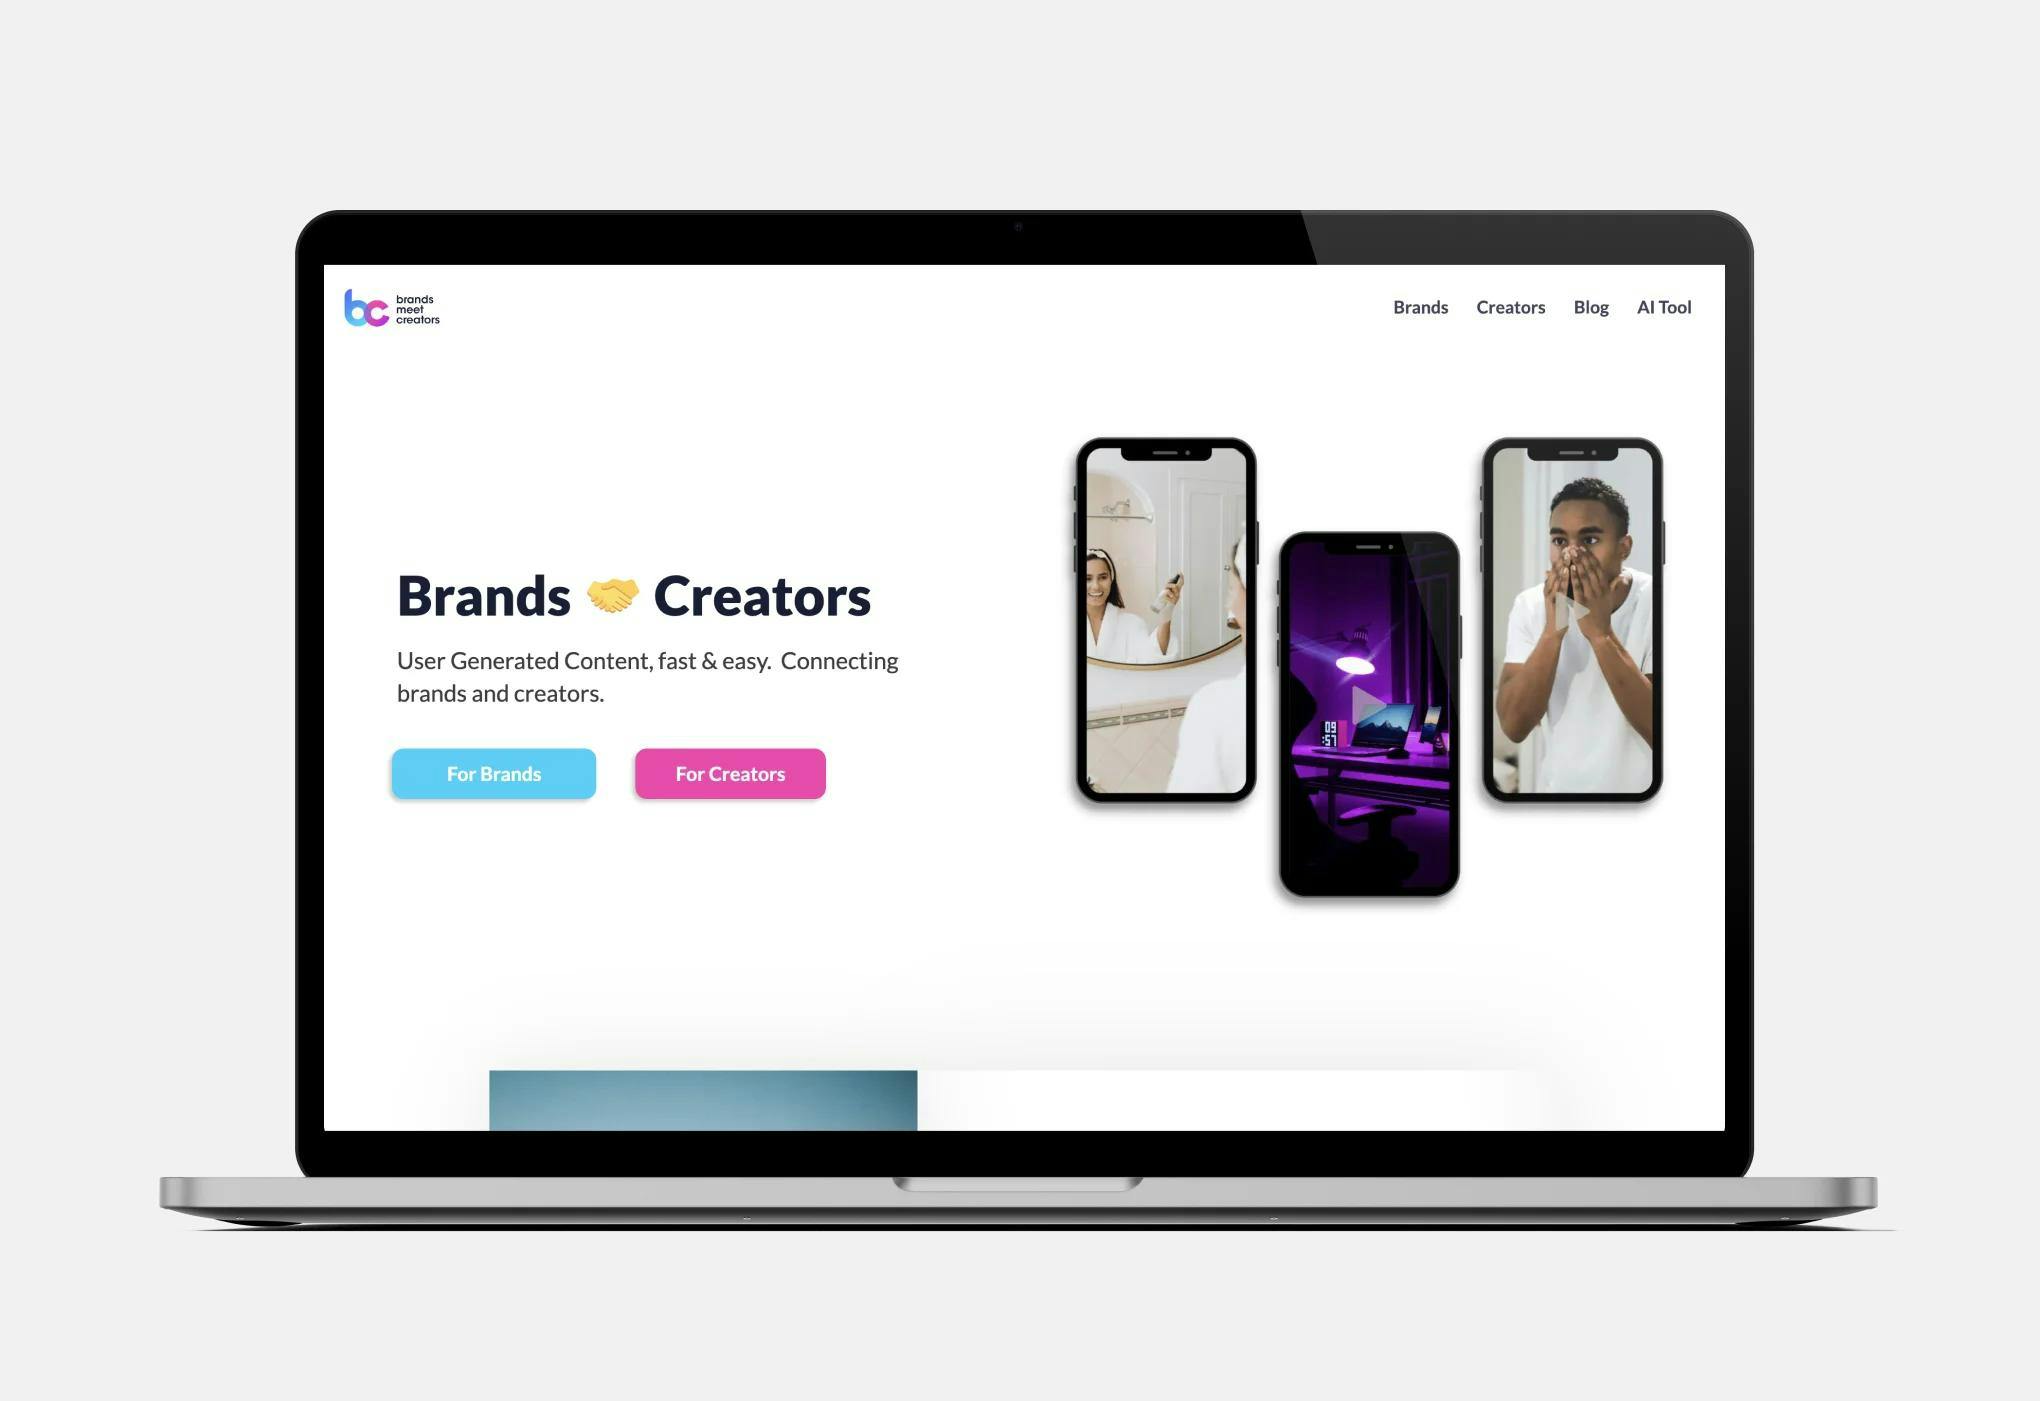 The homepage of UGC platform Brands Meet Creators